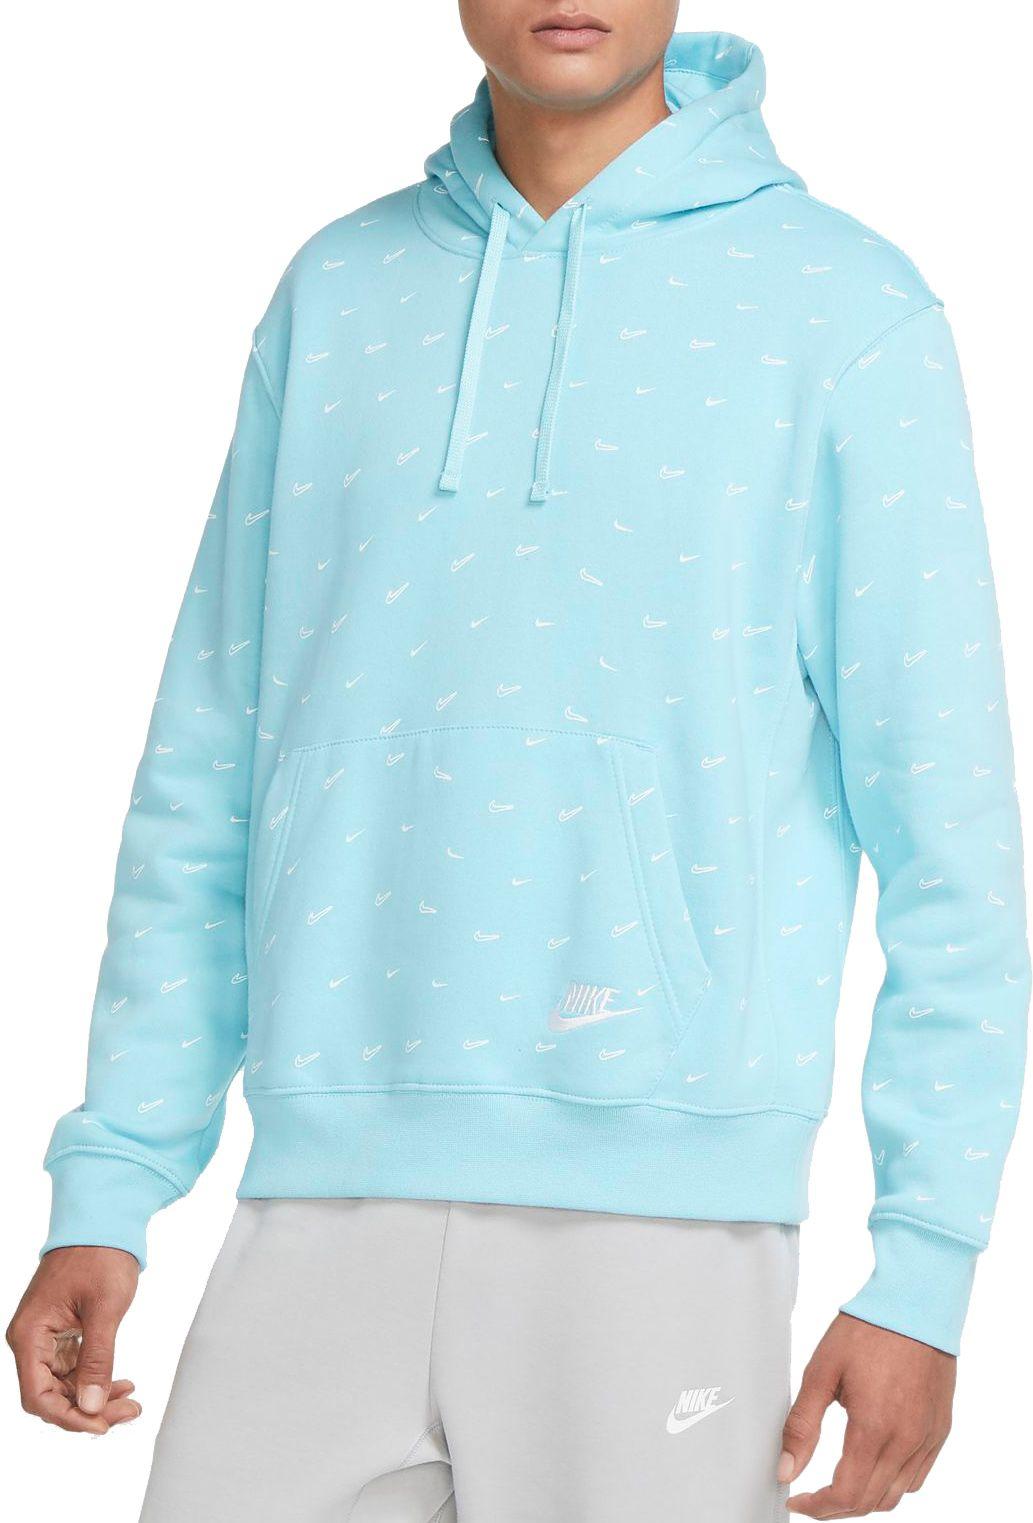 Nike Sportswear Club Fleece Swoosh Allover Print Pullover Hoodie in Blue  for Men - Lyst